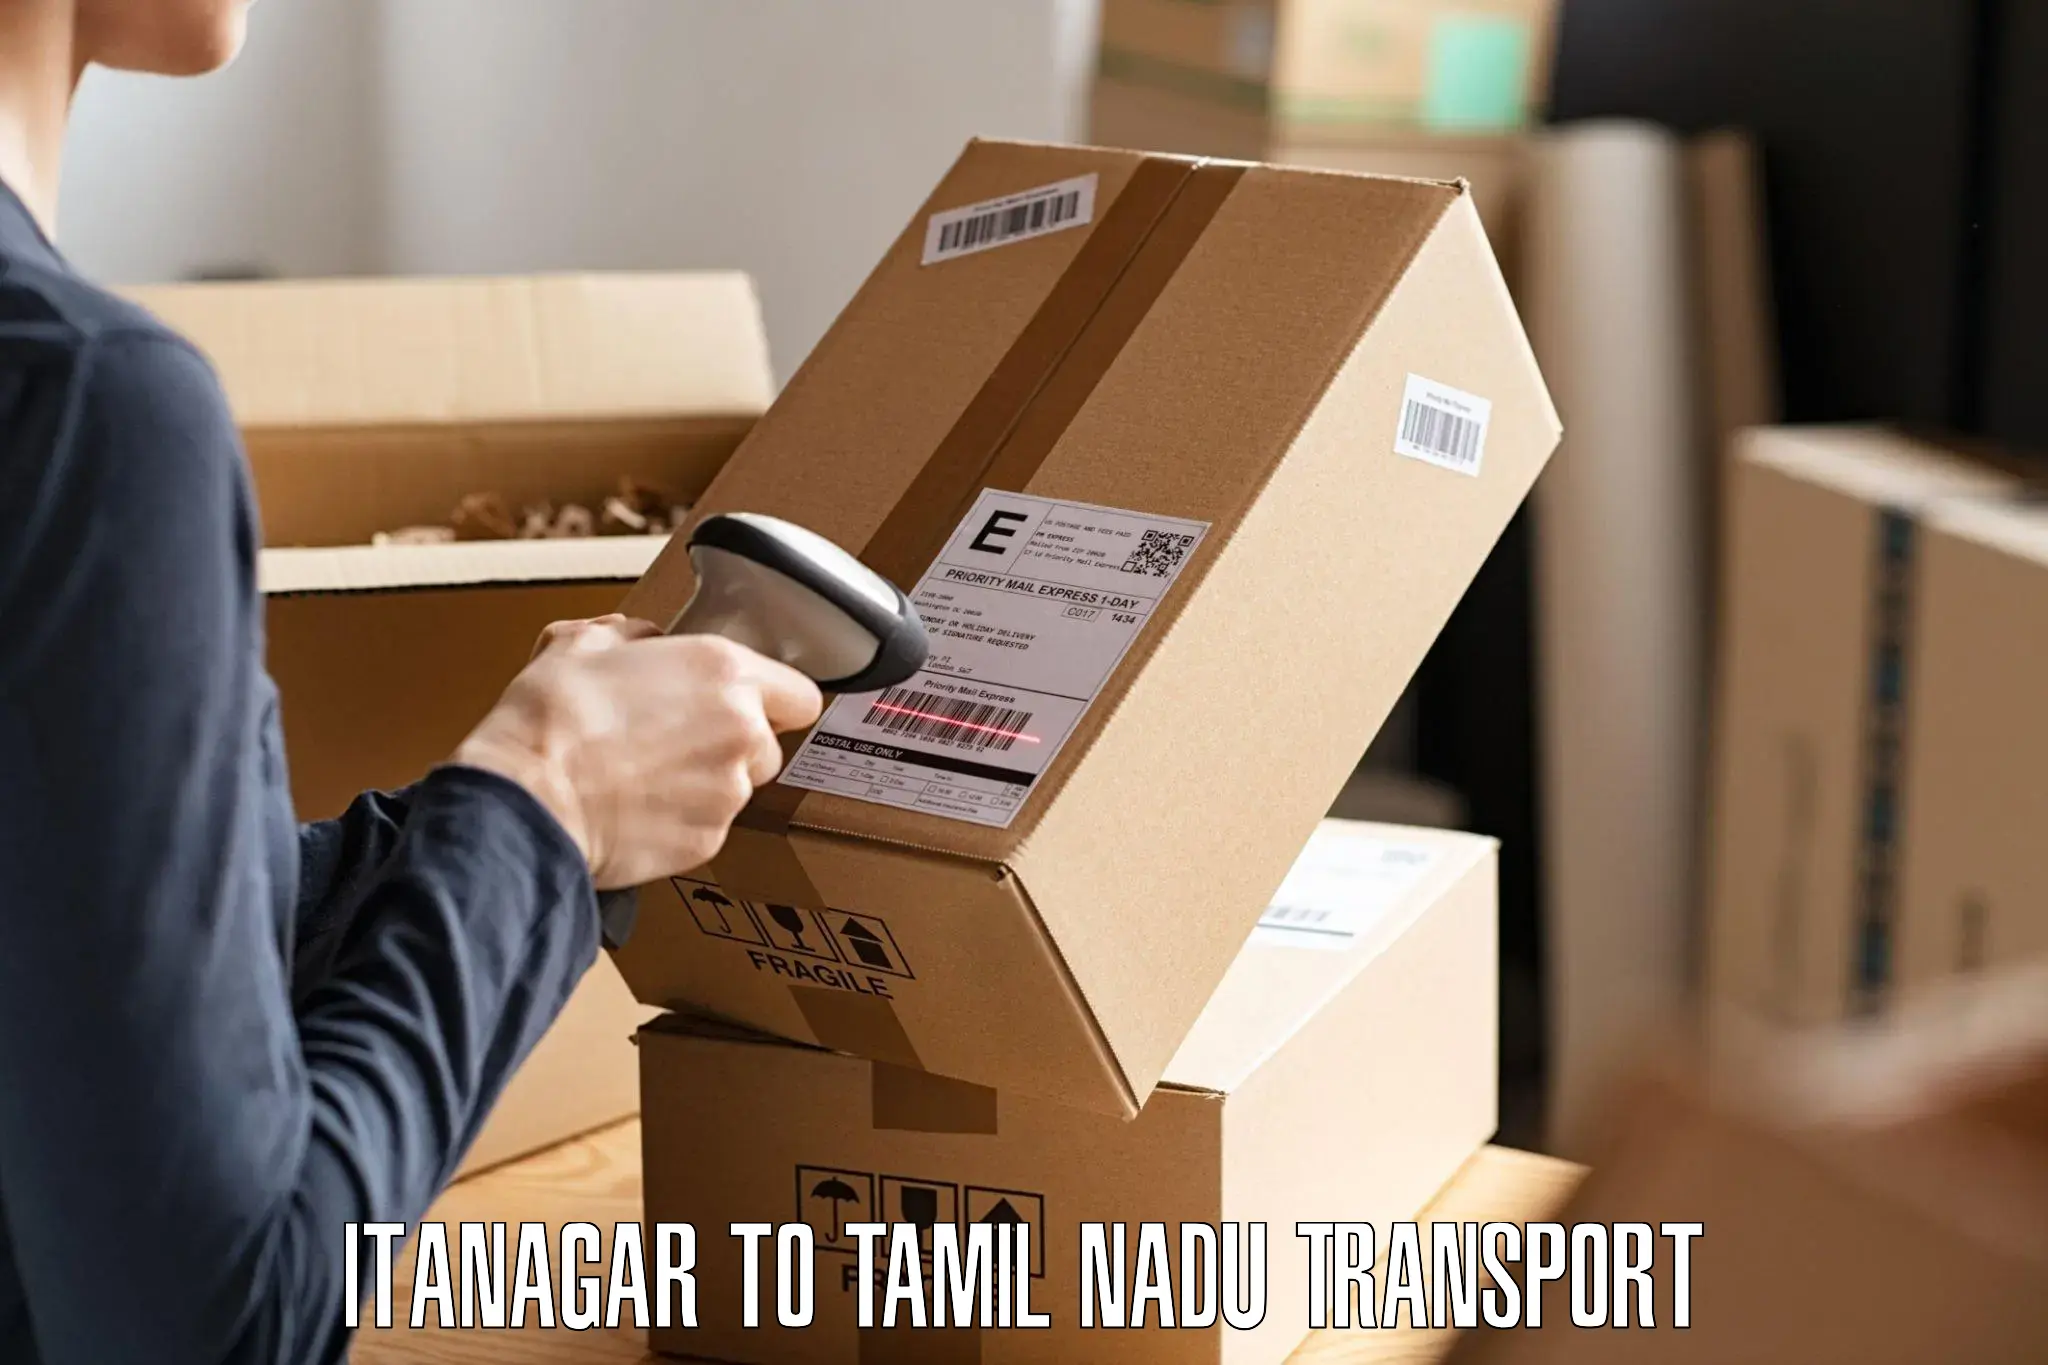 Goods delivery service Itanagar to Peikulam